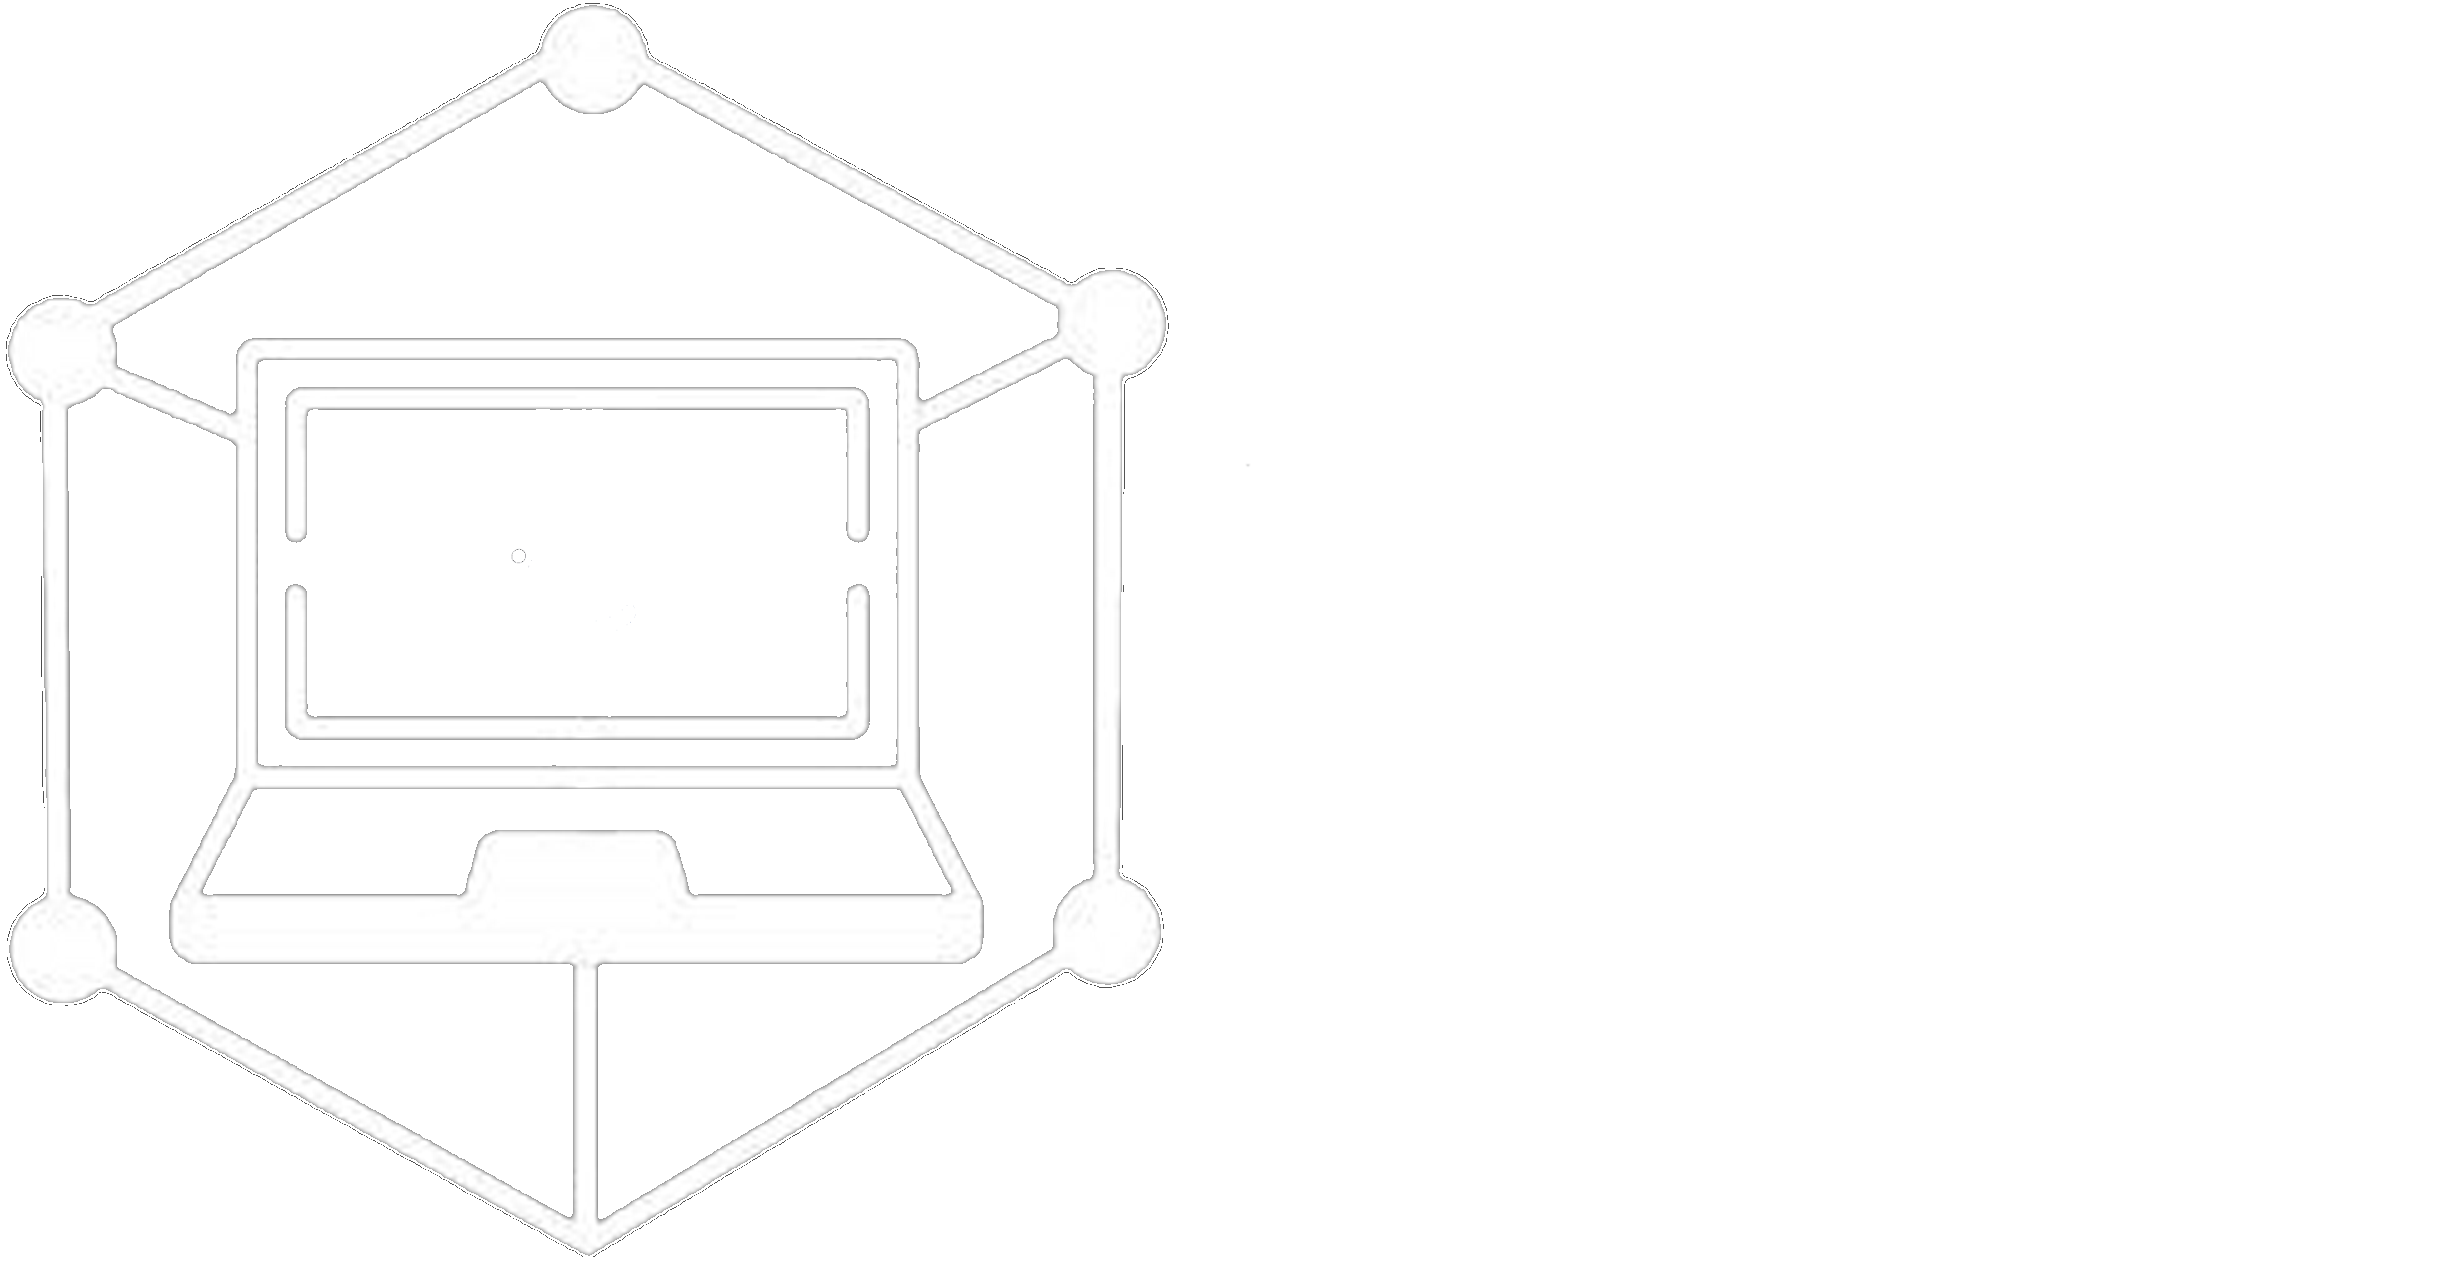 İTÜ Süper Bilgisayar Kulübü